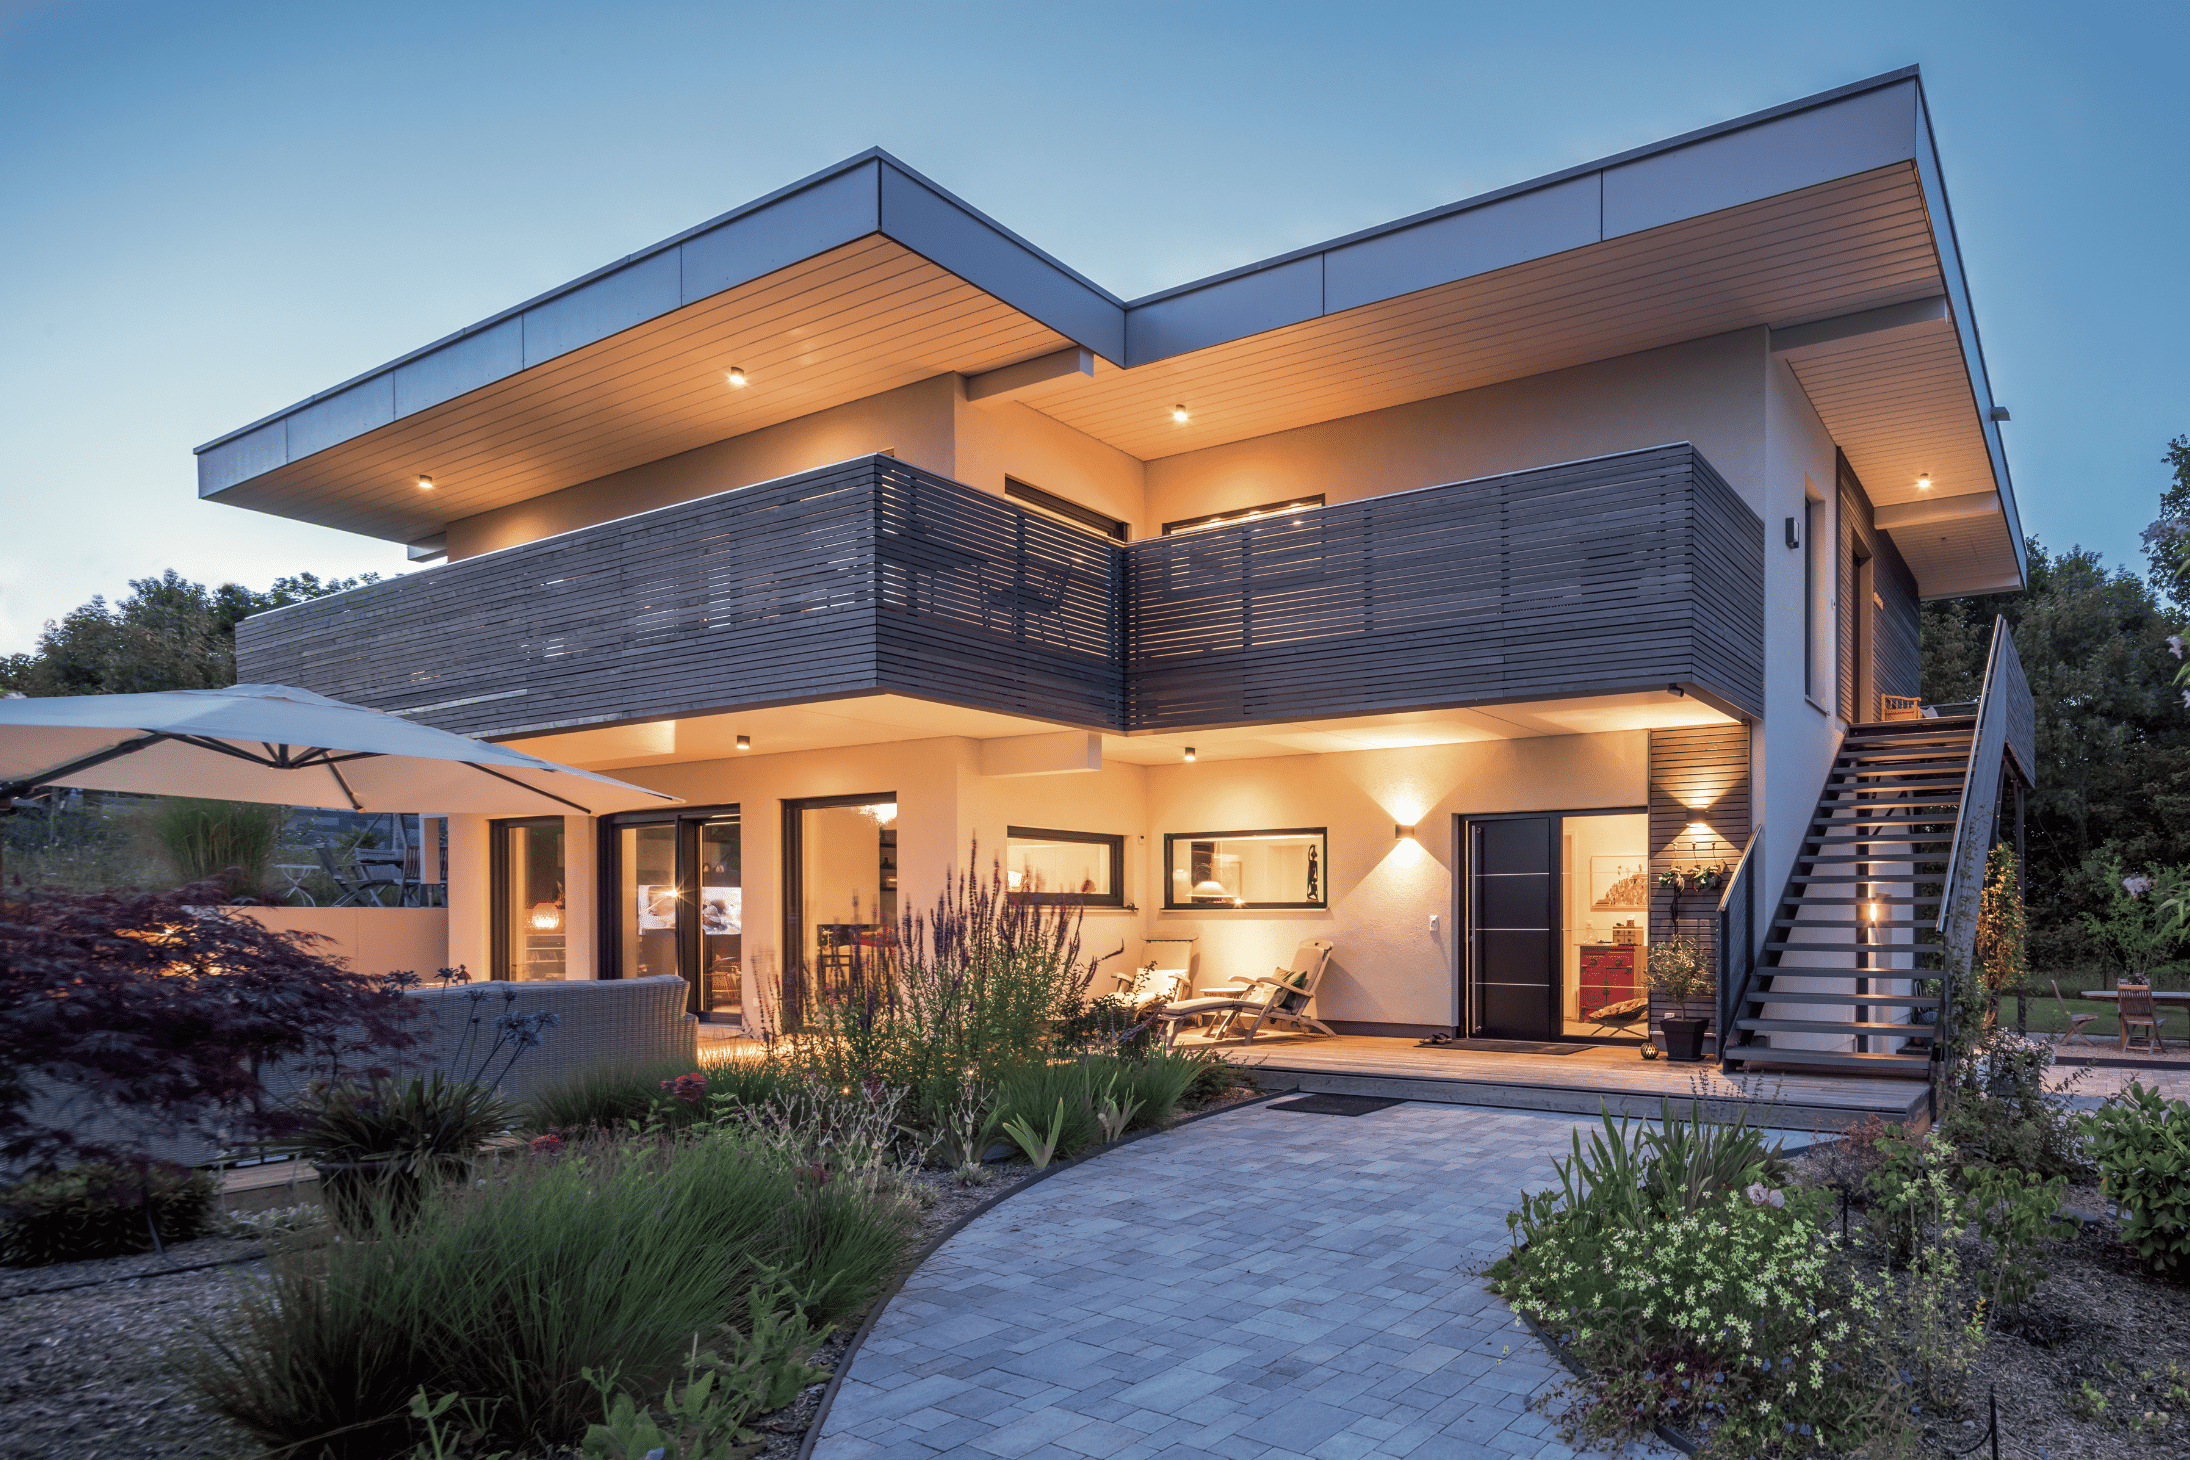 Regnauer Fertighaus zeigt ein modernes Einfamilienhaus mit Holzverkleidung und schöner Beleuchtung in der Abenddämmerung.